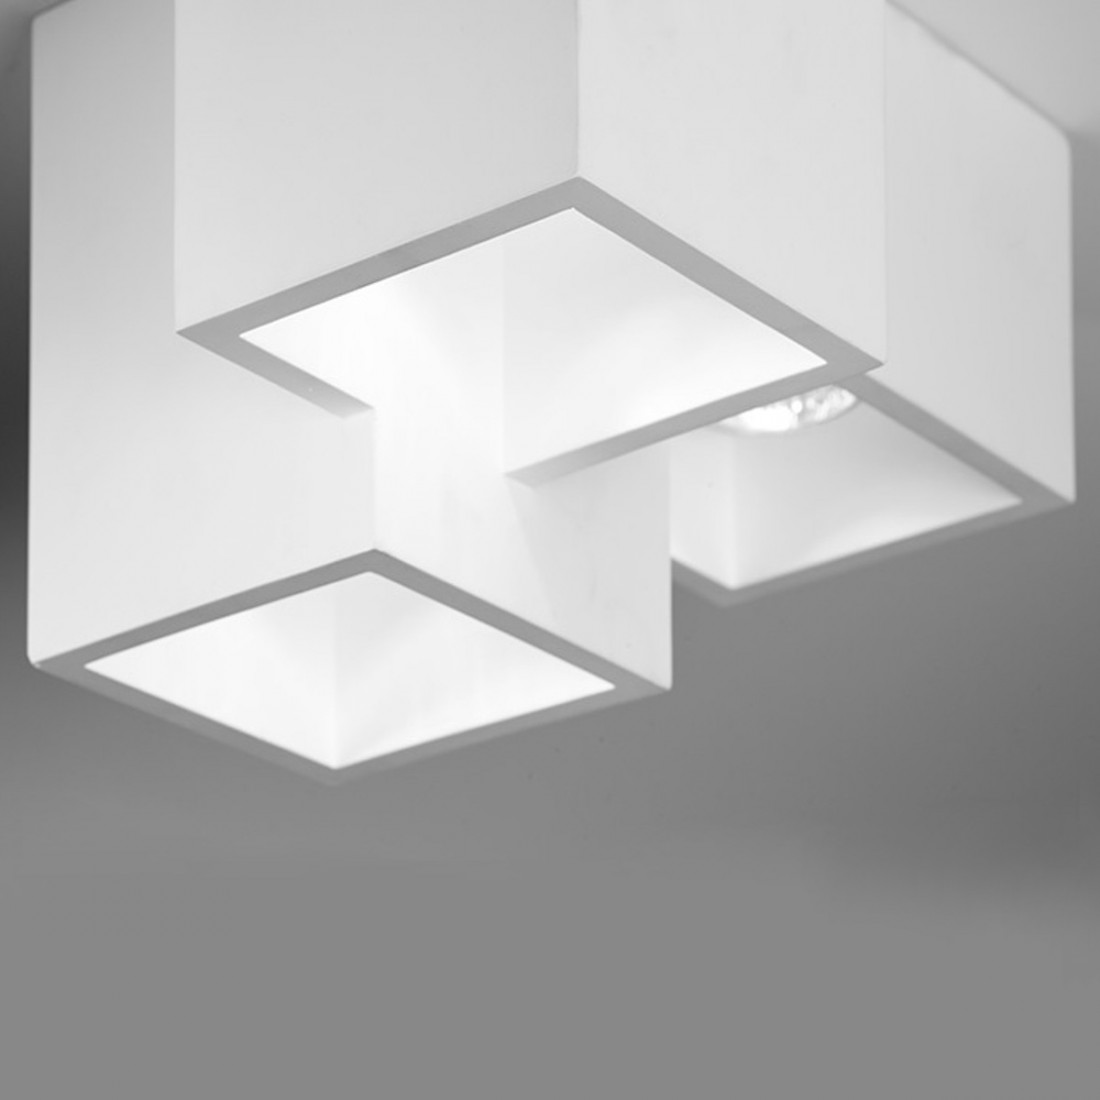 Quader aus weißem Gips, drei Lichter, Multi-Licht, GU10 LED